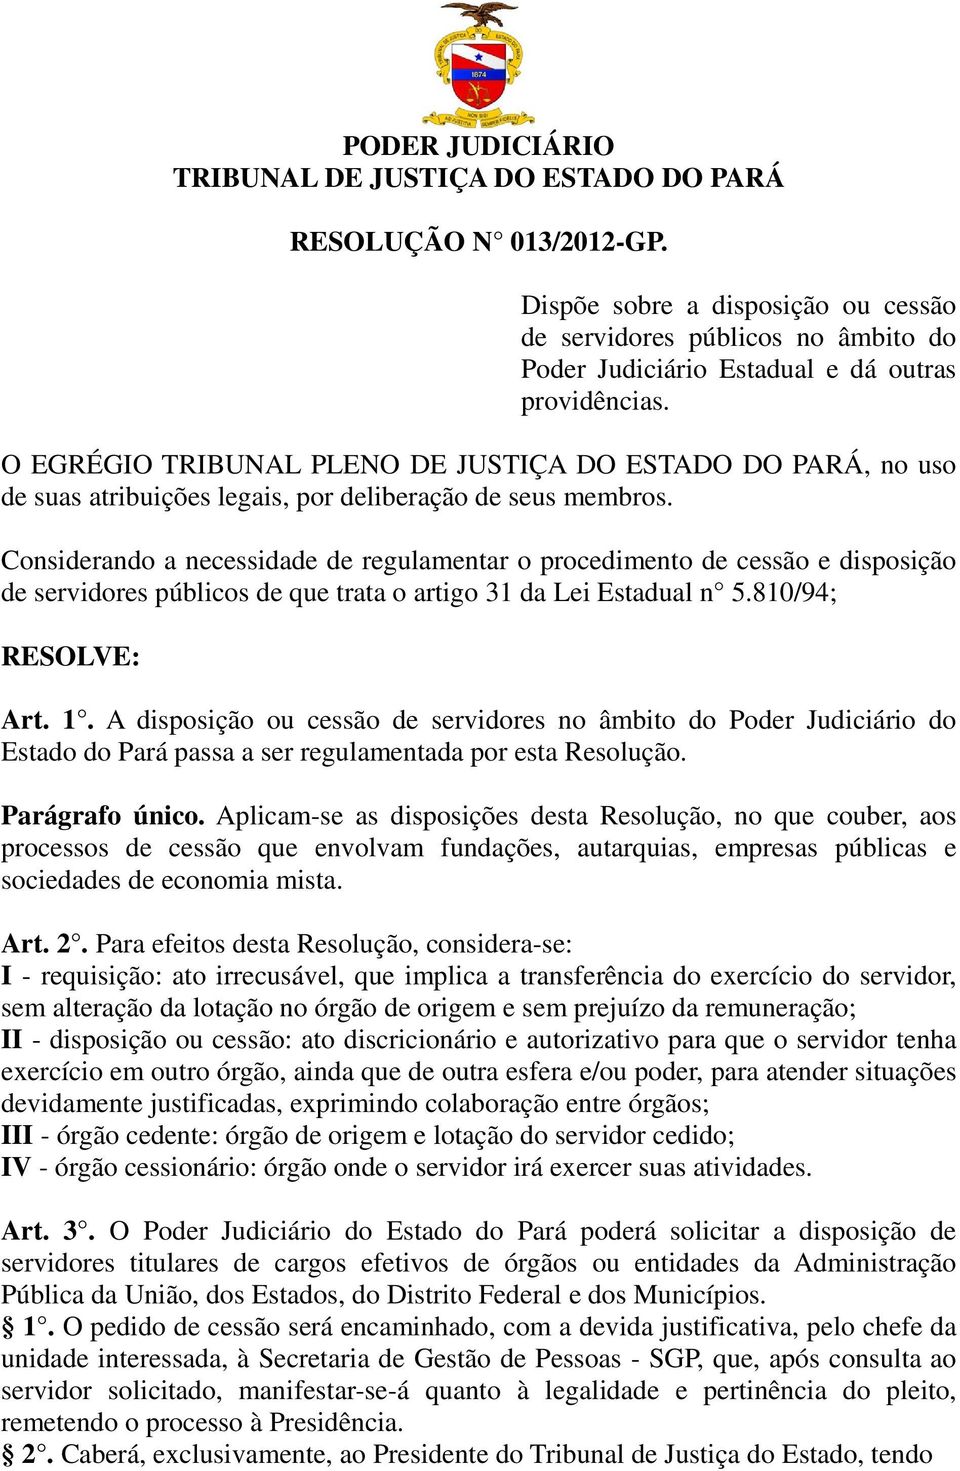 O EGRÉGIO TRIBUNAL PLENO DE JUSTIÇA DO ESTADO DO PARÁ, no uso de suas atribuições legais, por deliberação de seus membros.